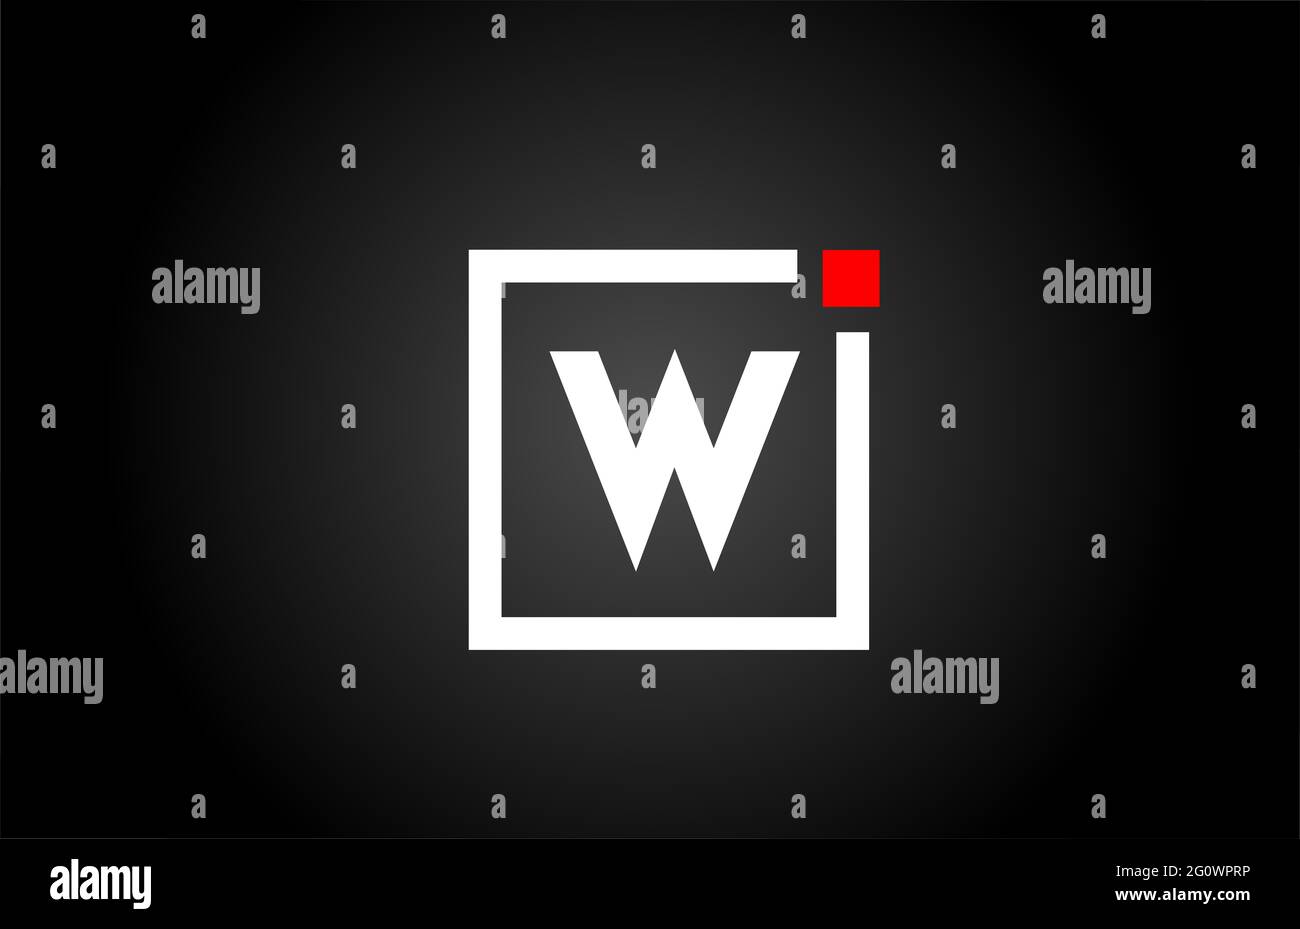 Logo con l'icona lettera dell'alfabeto W in bianco e nero. Design aziendale e aziendale con punto quadrato e rosso. Modello di identità aziendale creativa Foto Stock